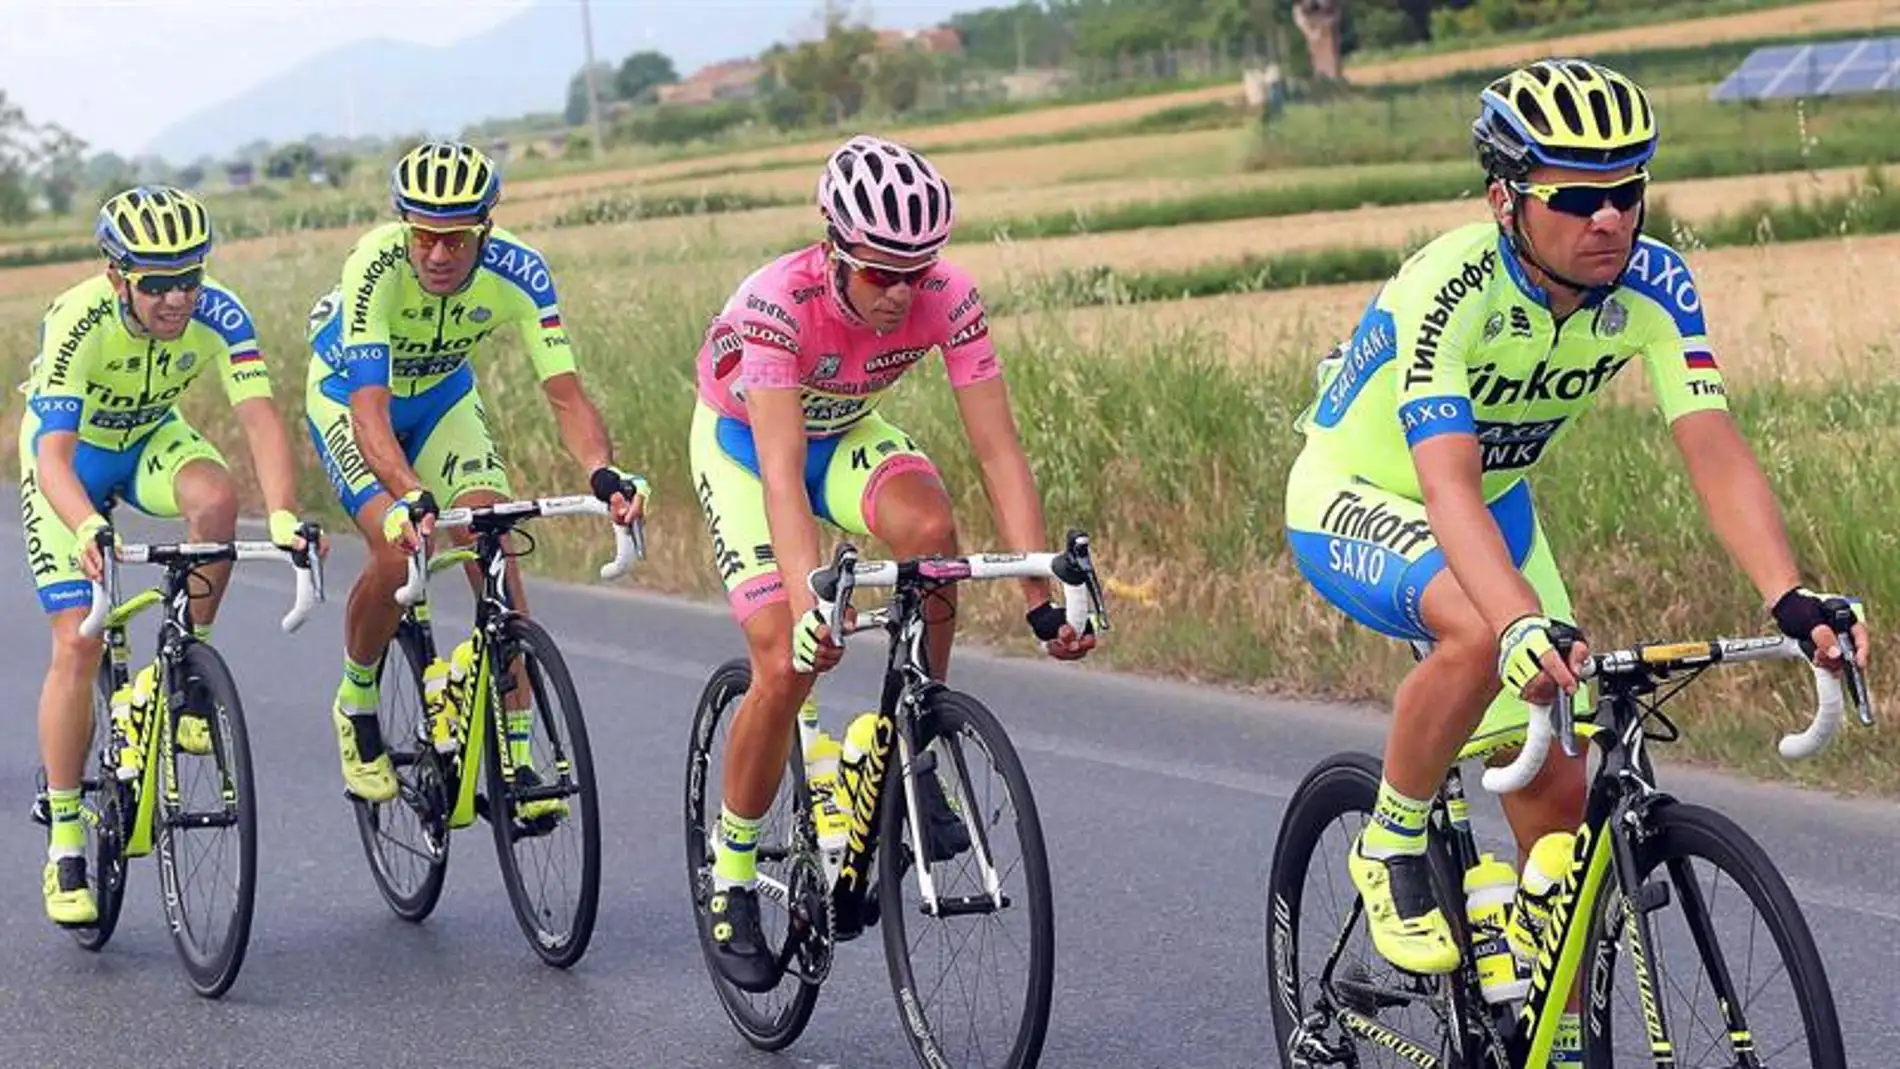 Alberto Contador en el Giro de Italia junto a su equipo